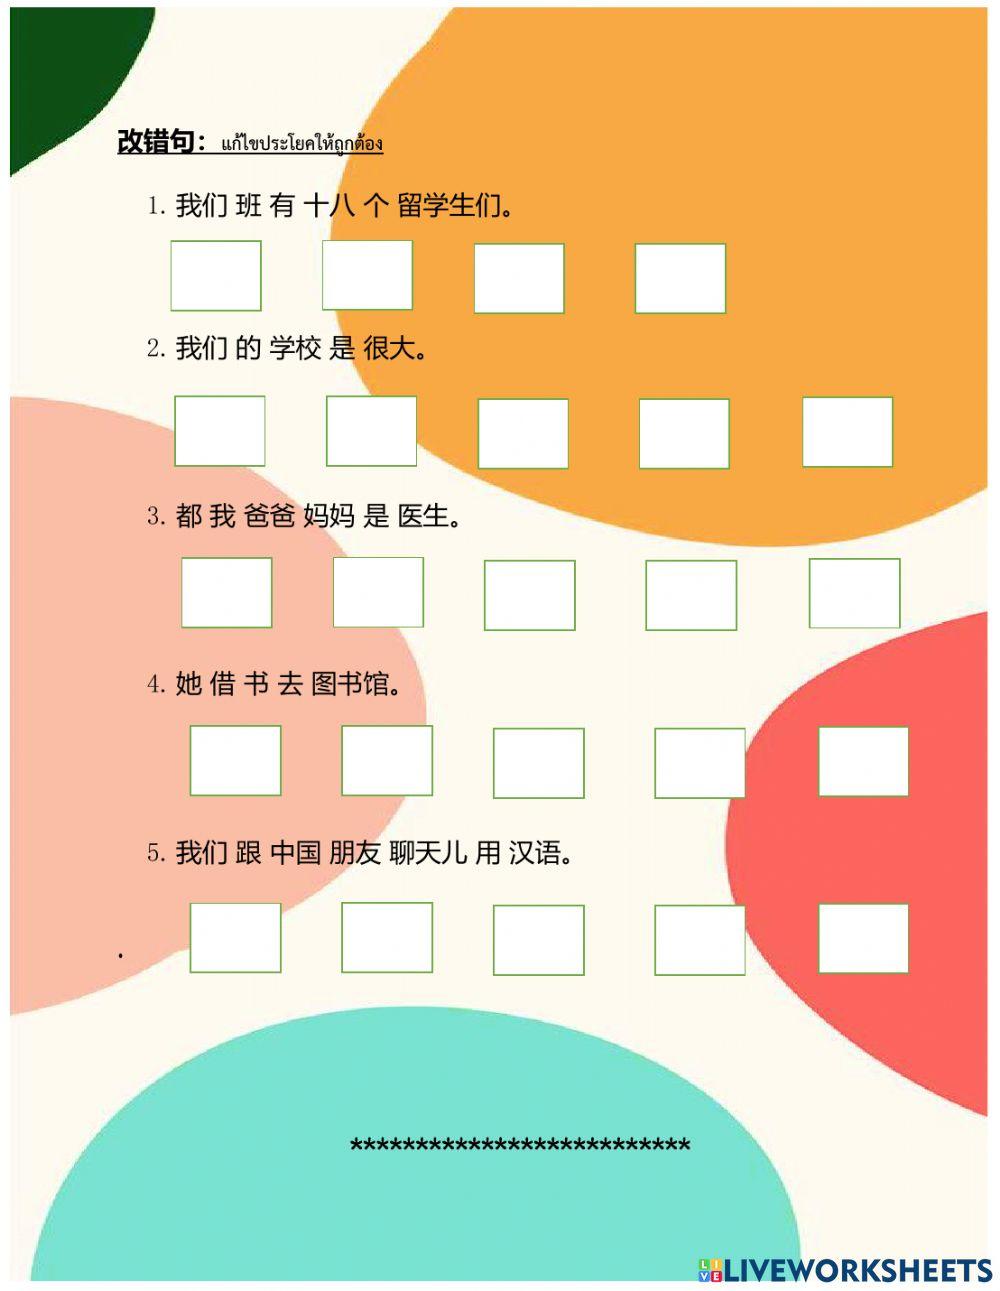 ตัวอย่าง 汉语教程16-18 测验1